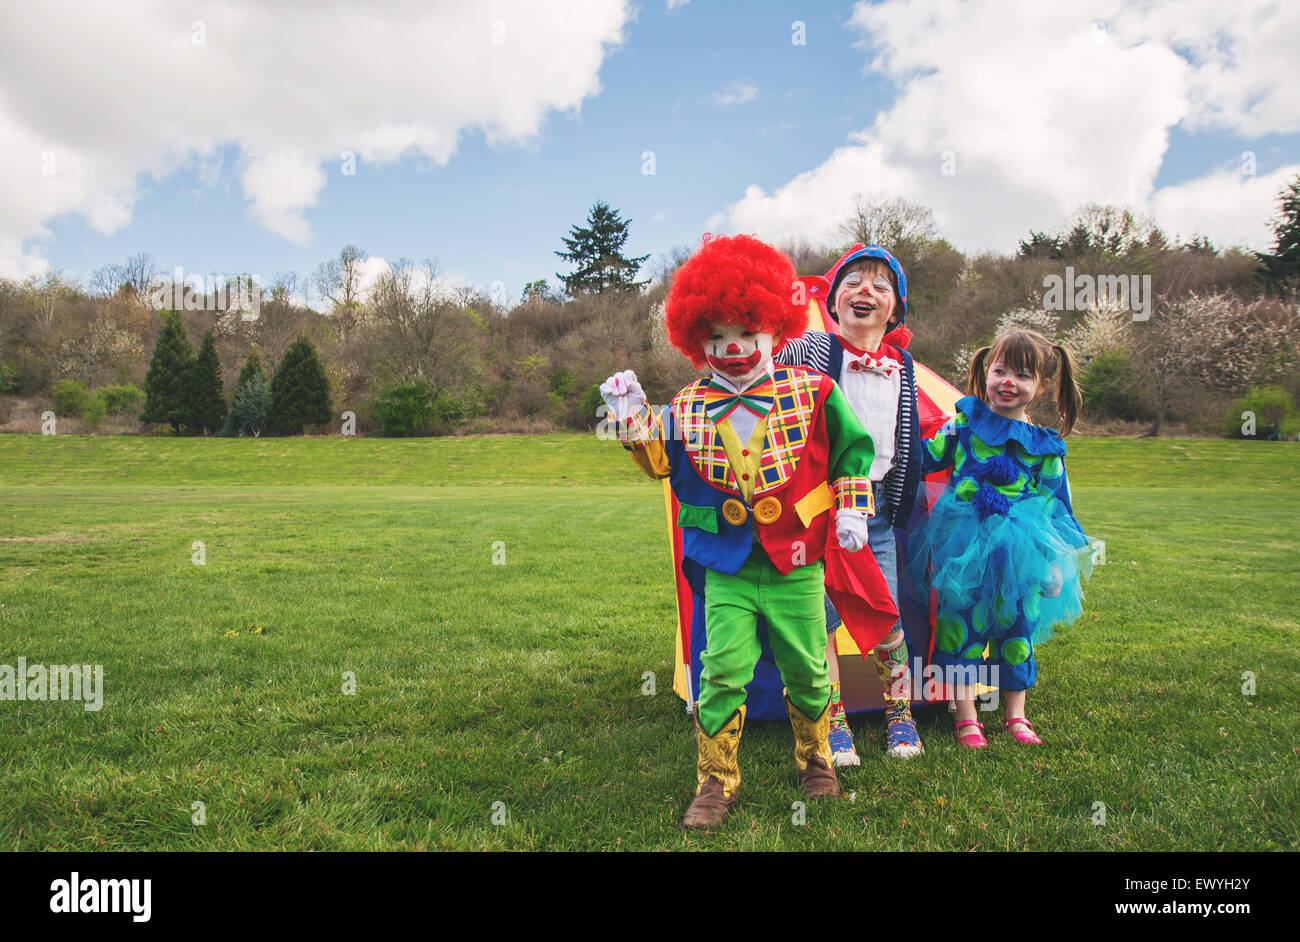 Drei Kinder als Clowns verkleidet Stockfoto